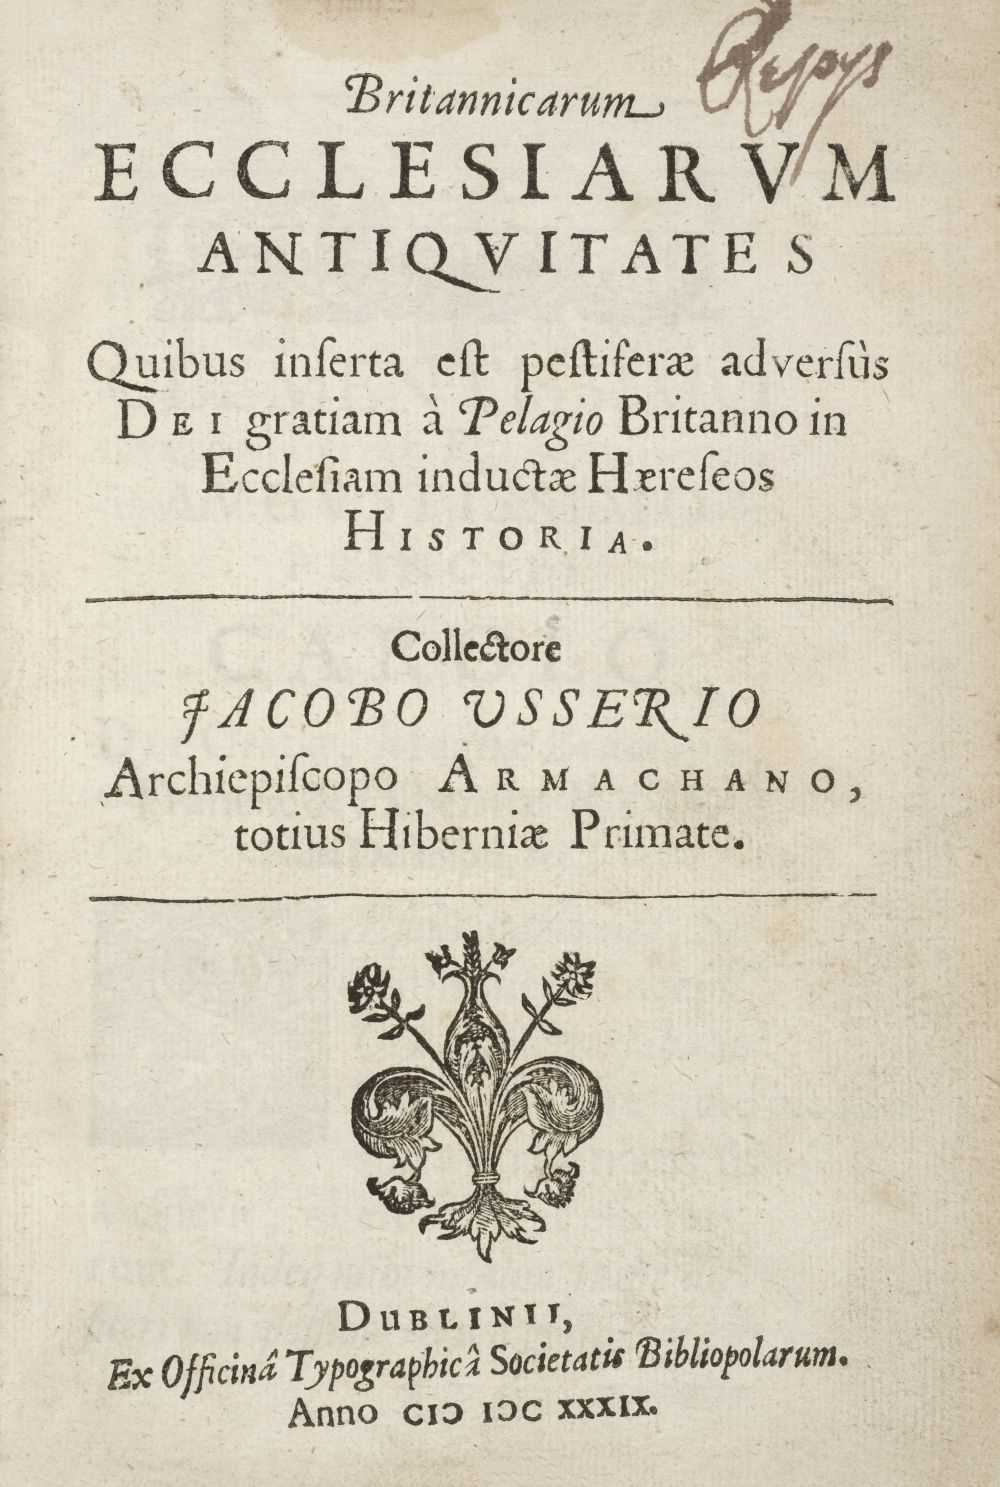 Lot 391 - Ussher (James). Britannicarum Ecclesiarum Antiquitates, 1st ed., Dublin, 1639